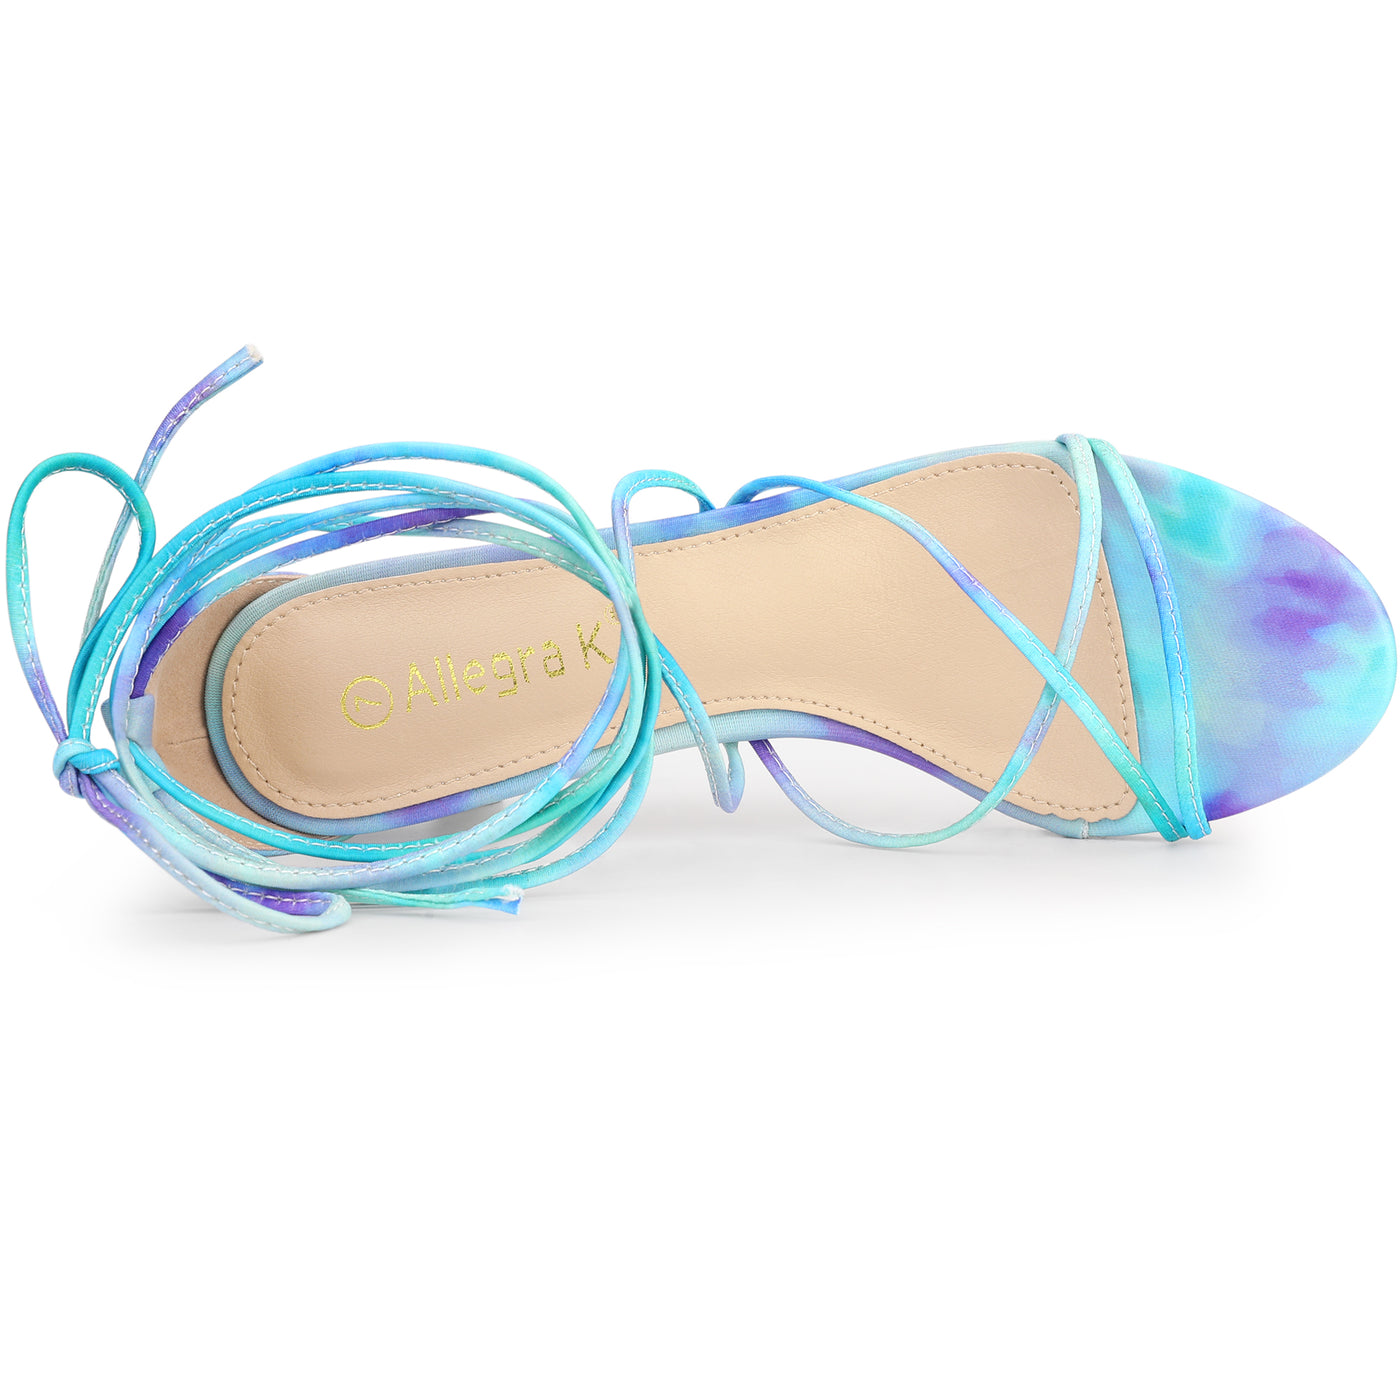 Allegra K Open Toe Strappy Tie Dye Lace Up Kitten Heel Sandals